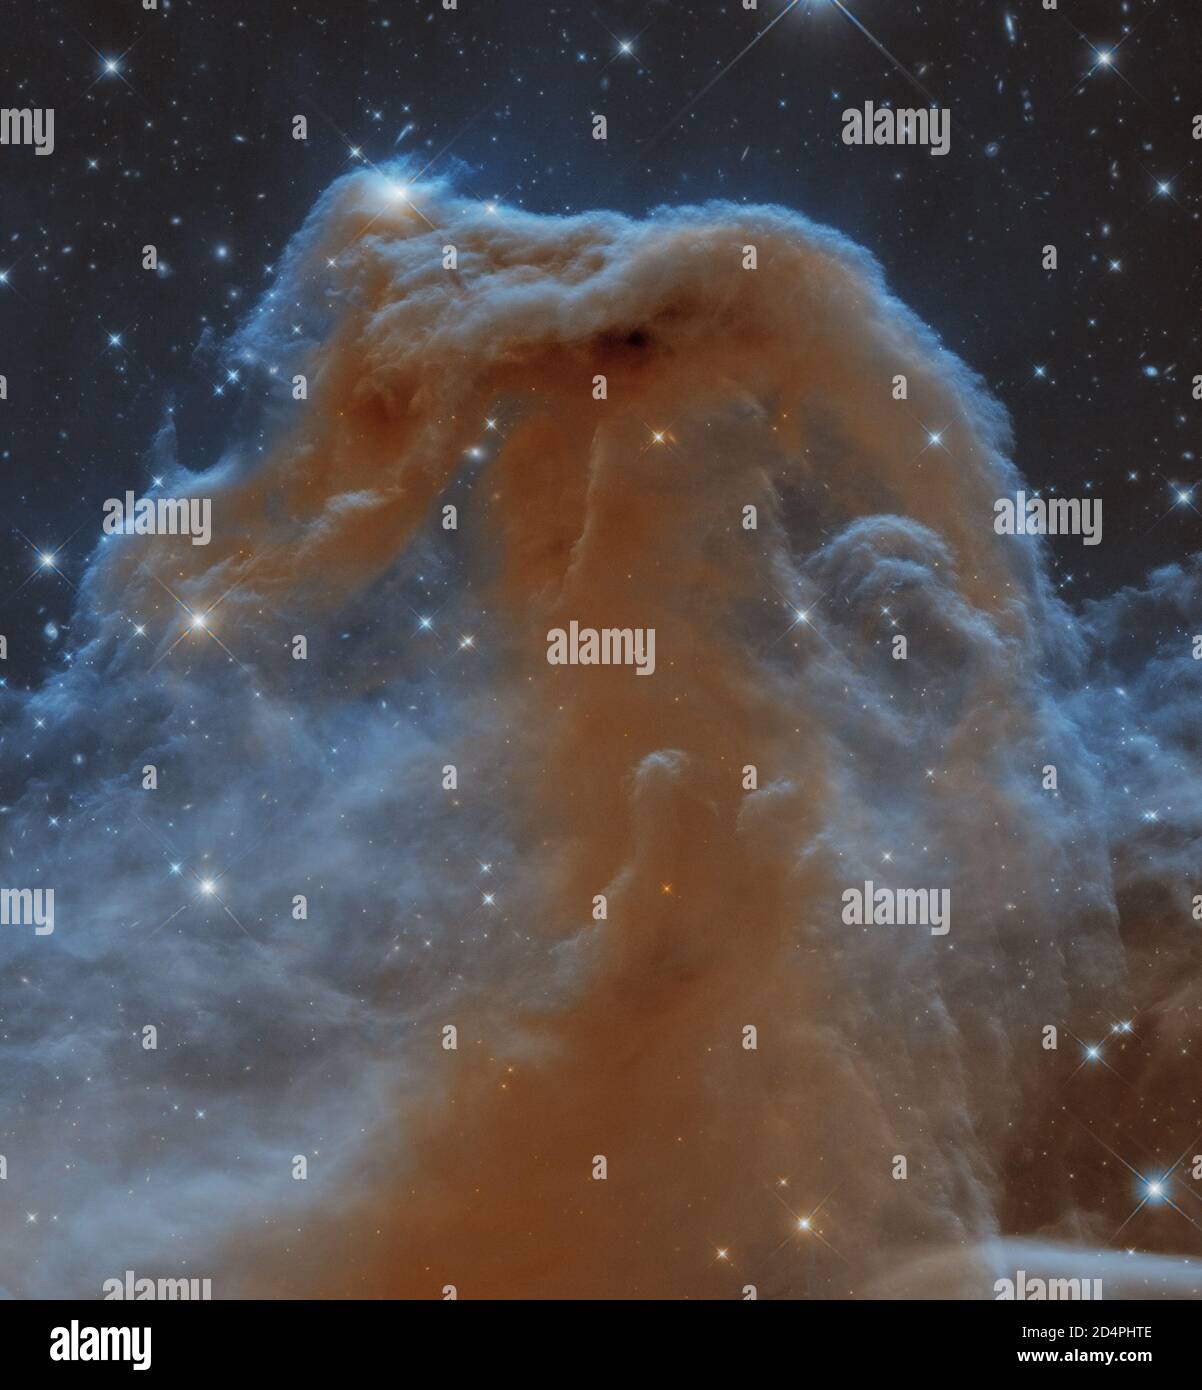 La Nebula Horsehead (Barnard 33) è una nebulosa scura distante circa 1,500 anni luce nel complesso di nubi molecolari Orion. L'oggetto è stato scoperto su Foto Stock